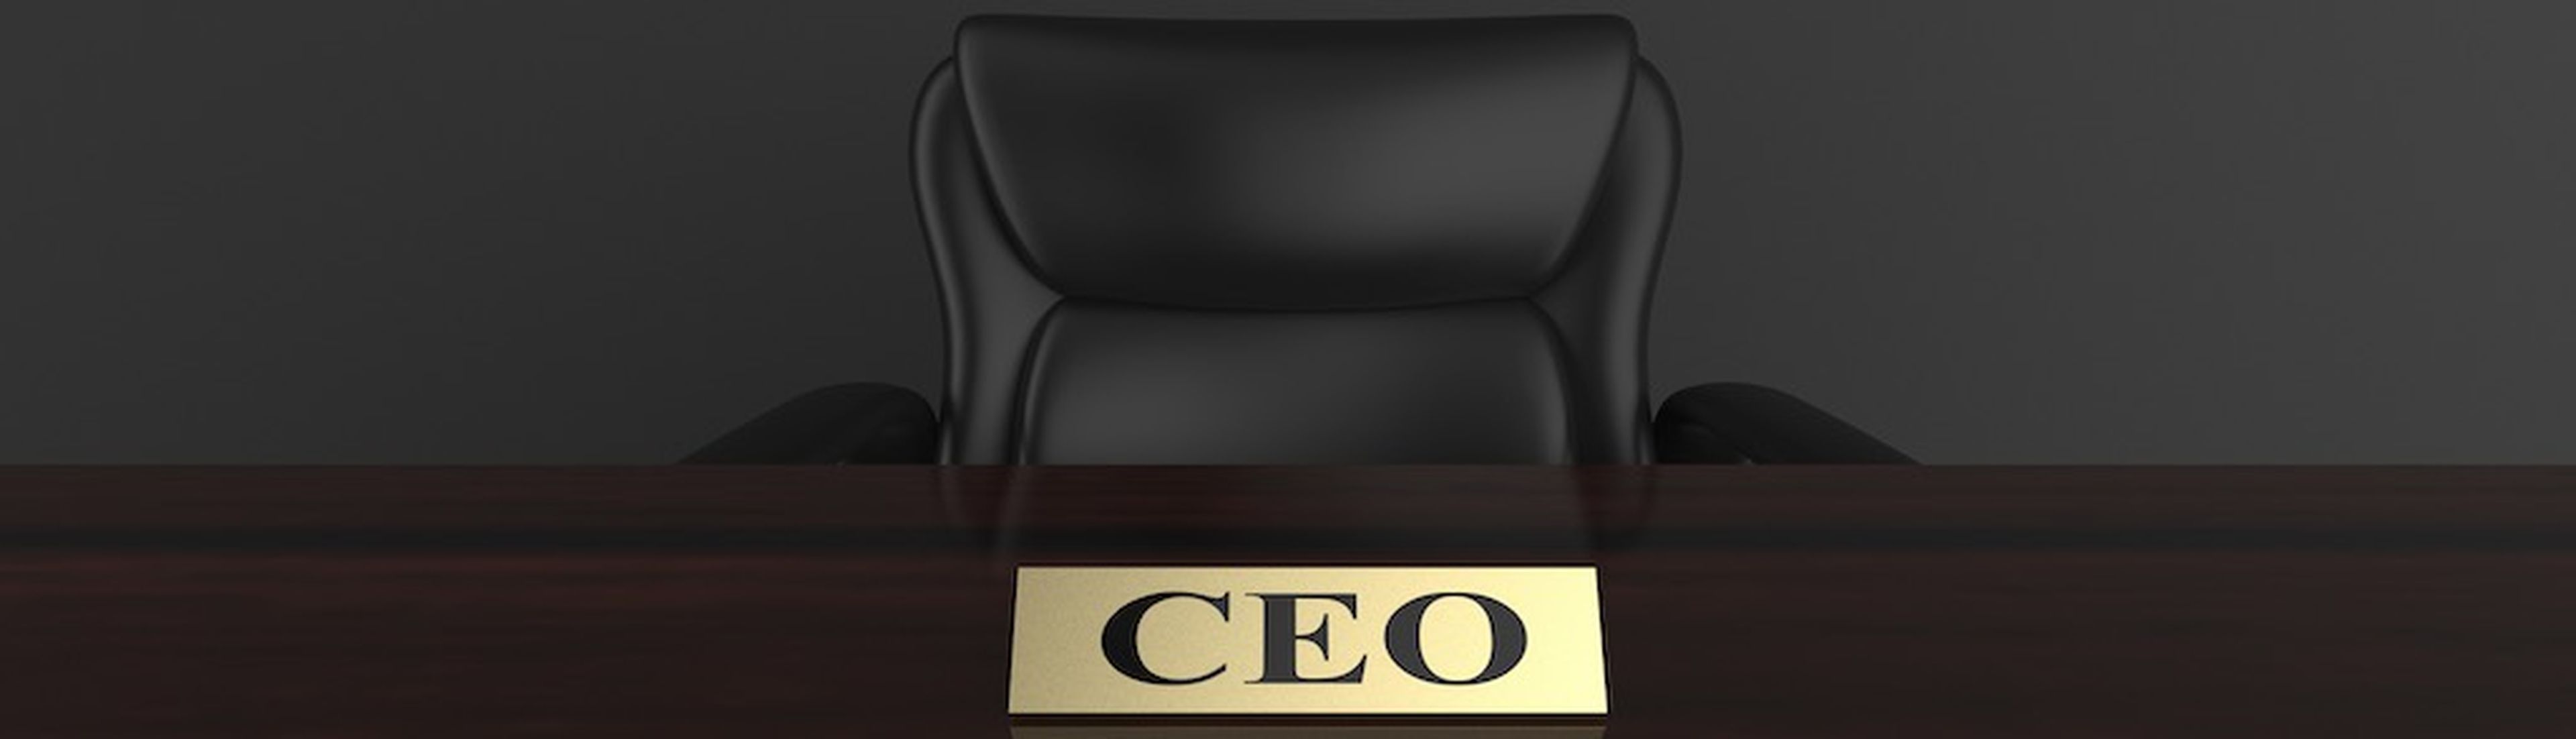 CEO 3d rendering.jpg